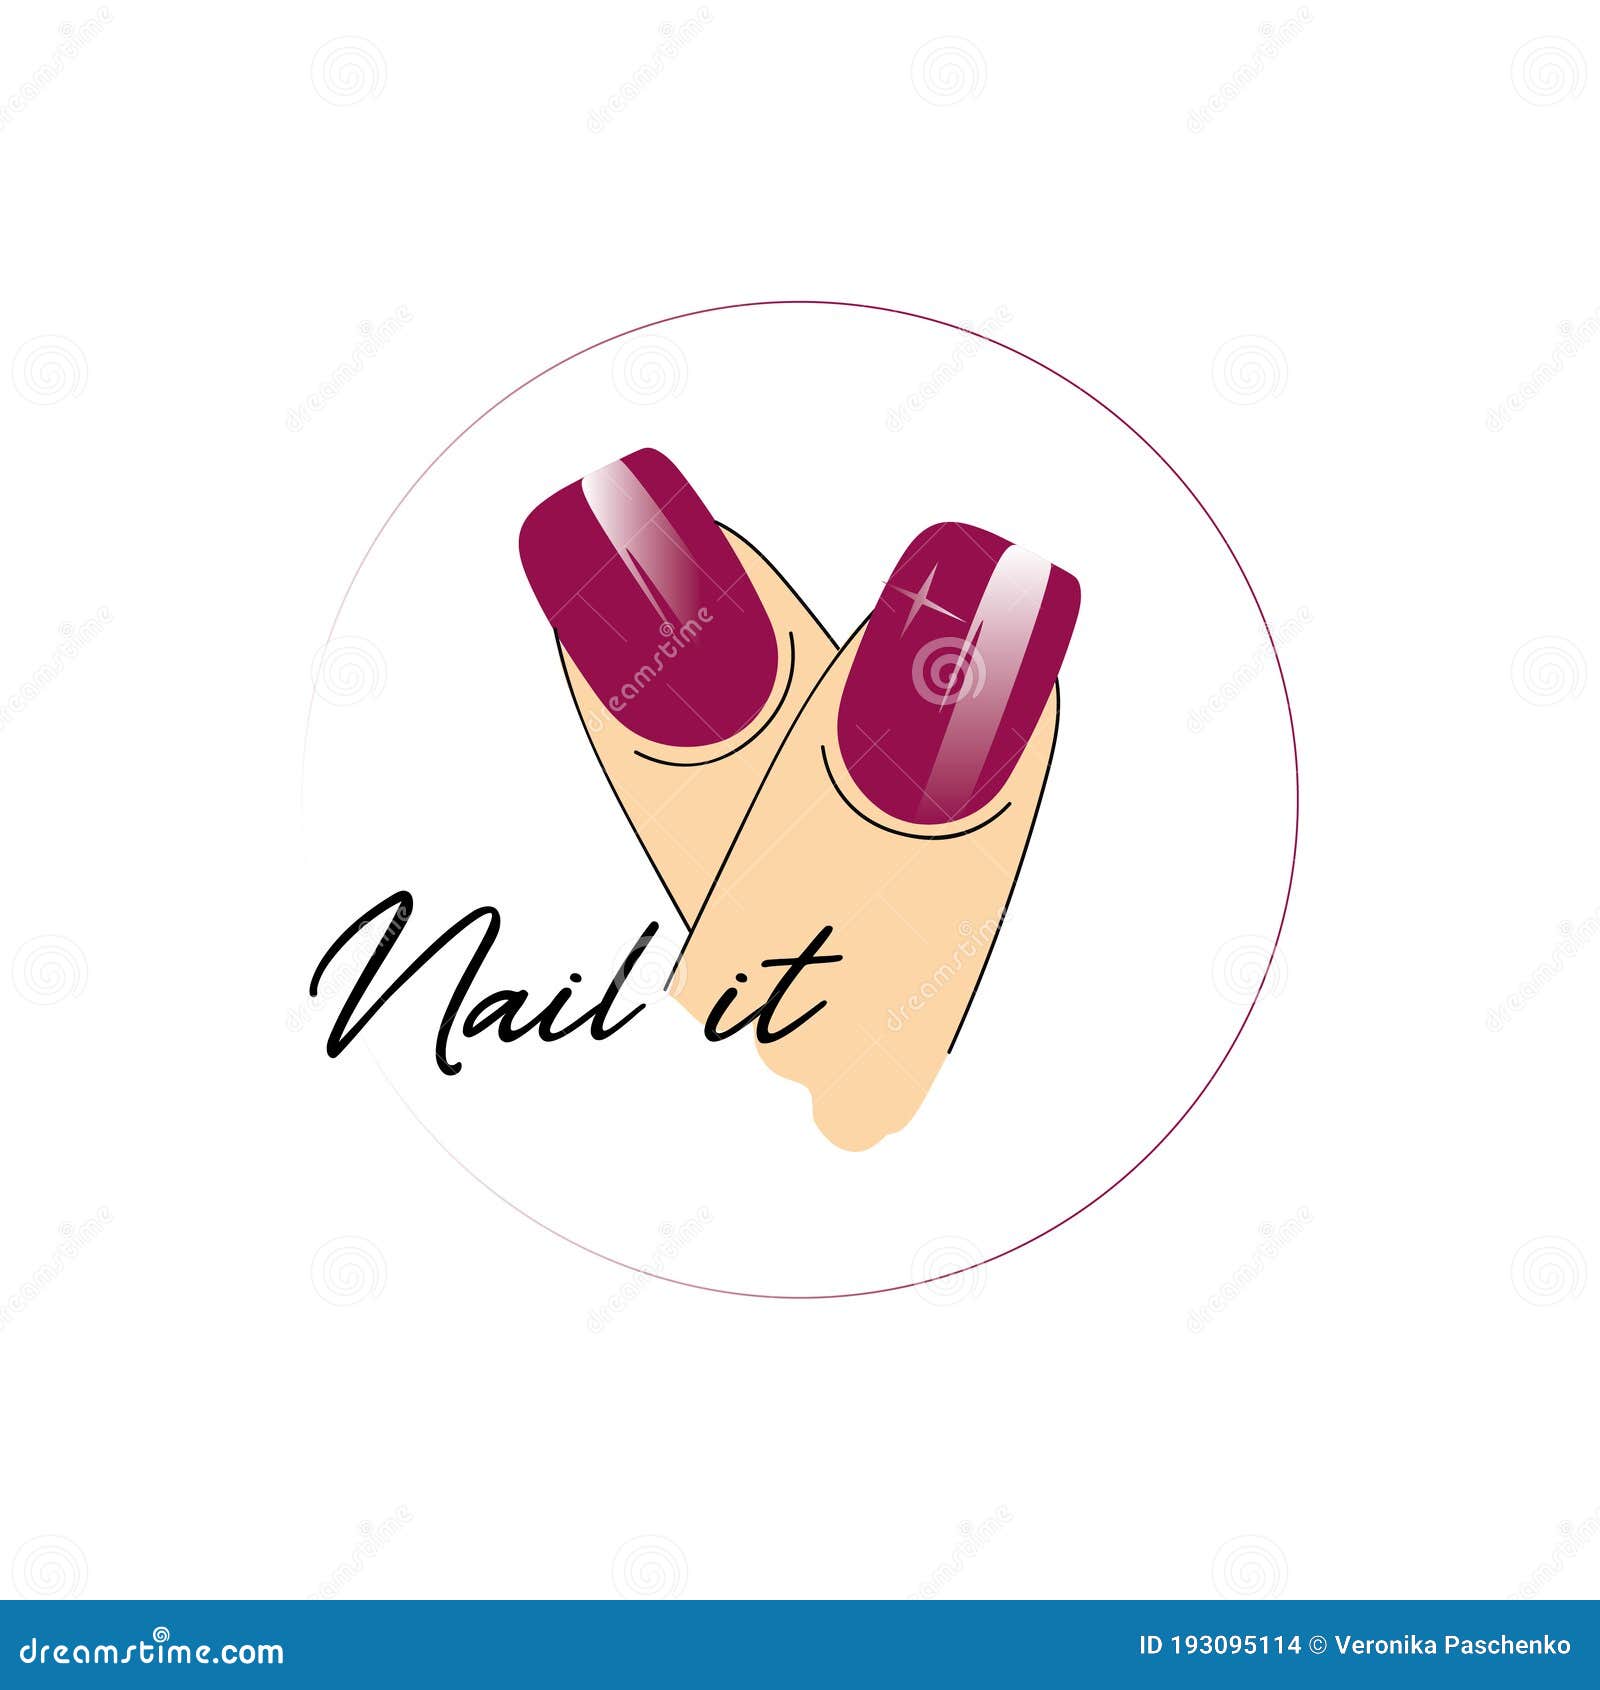 Vector logo template for nail art studio. Stock Vector by ©Keron 426161960